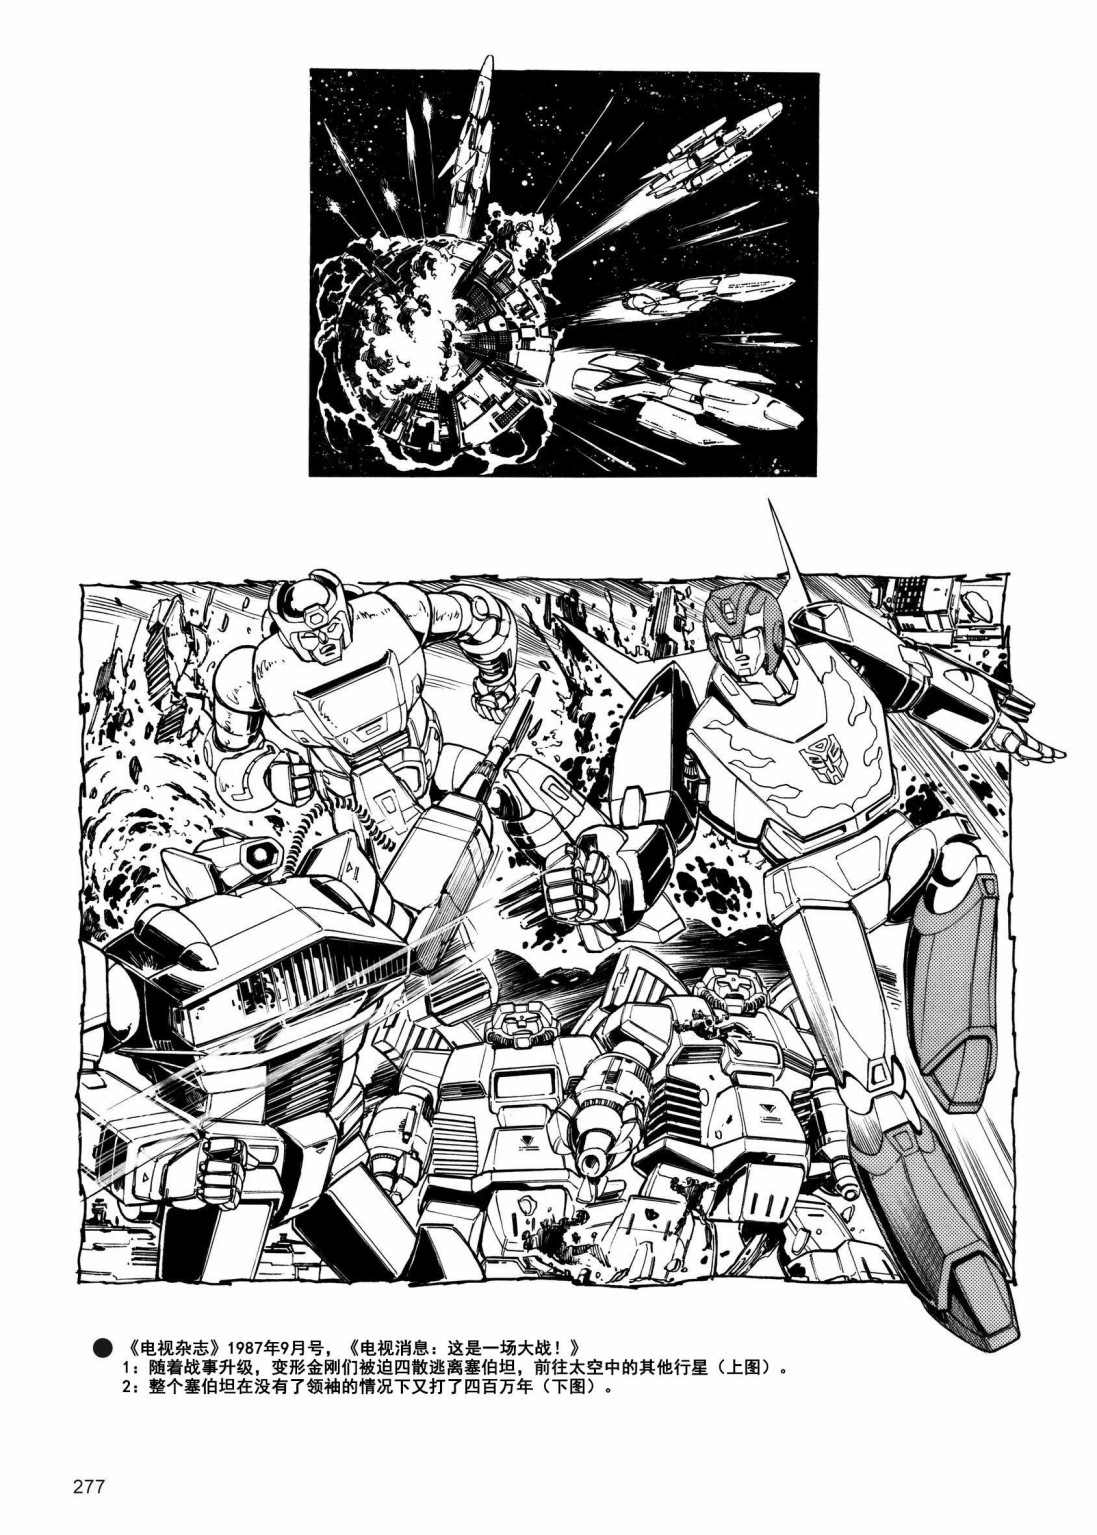 变形金刚日版G1杂志插画 - 变形金刚：头领战士 - 2